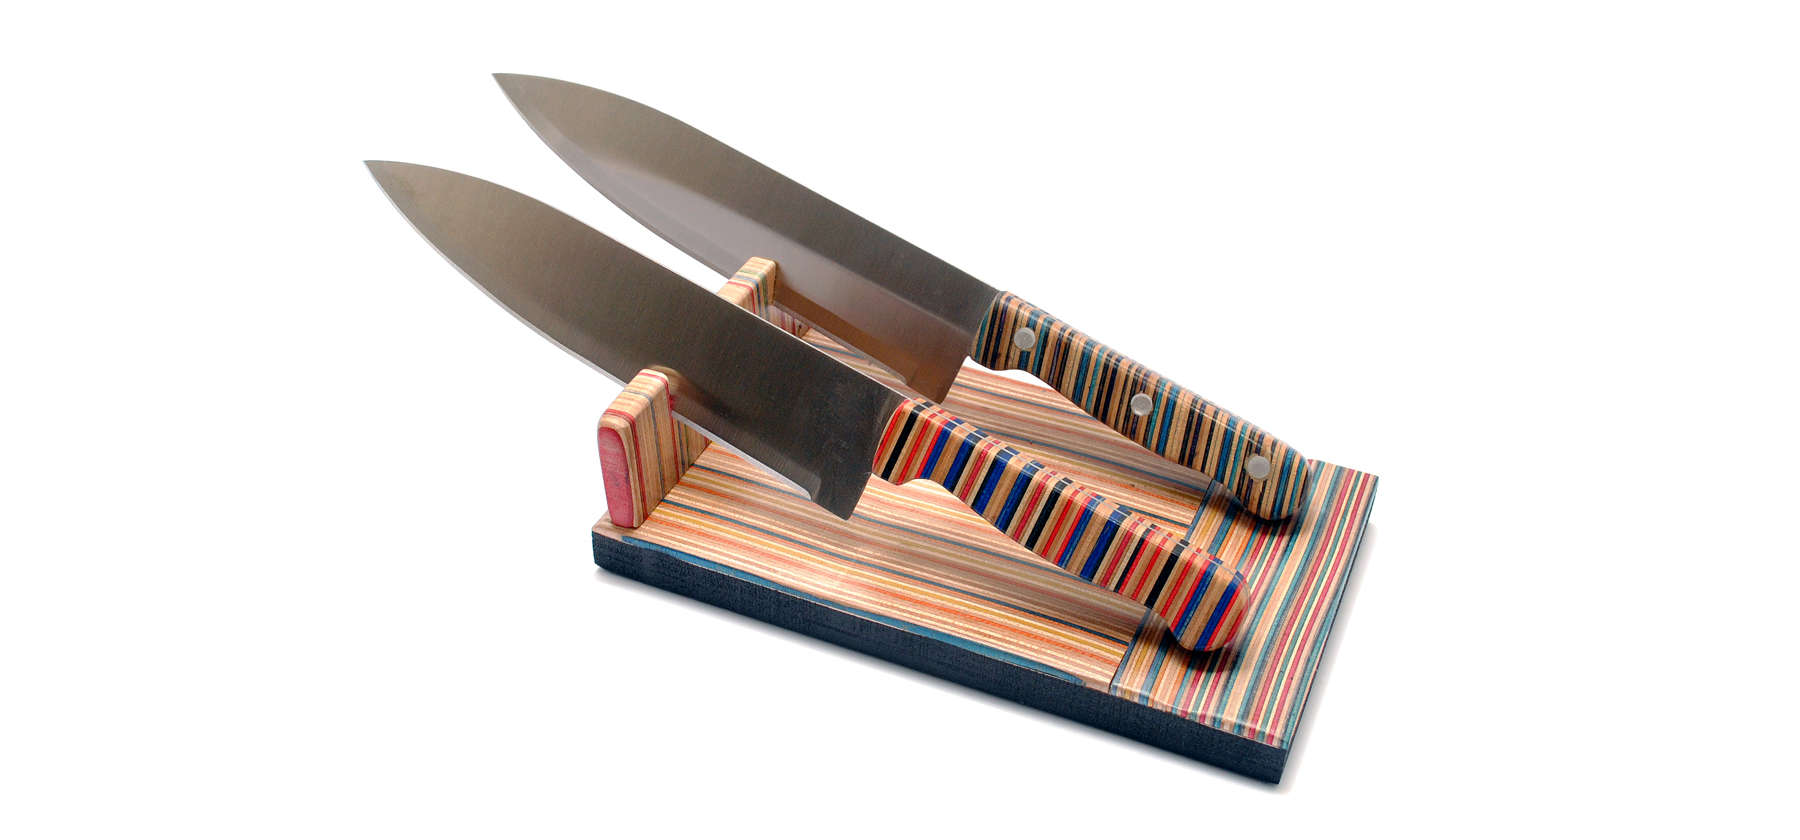 Knives handles